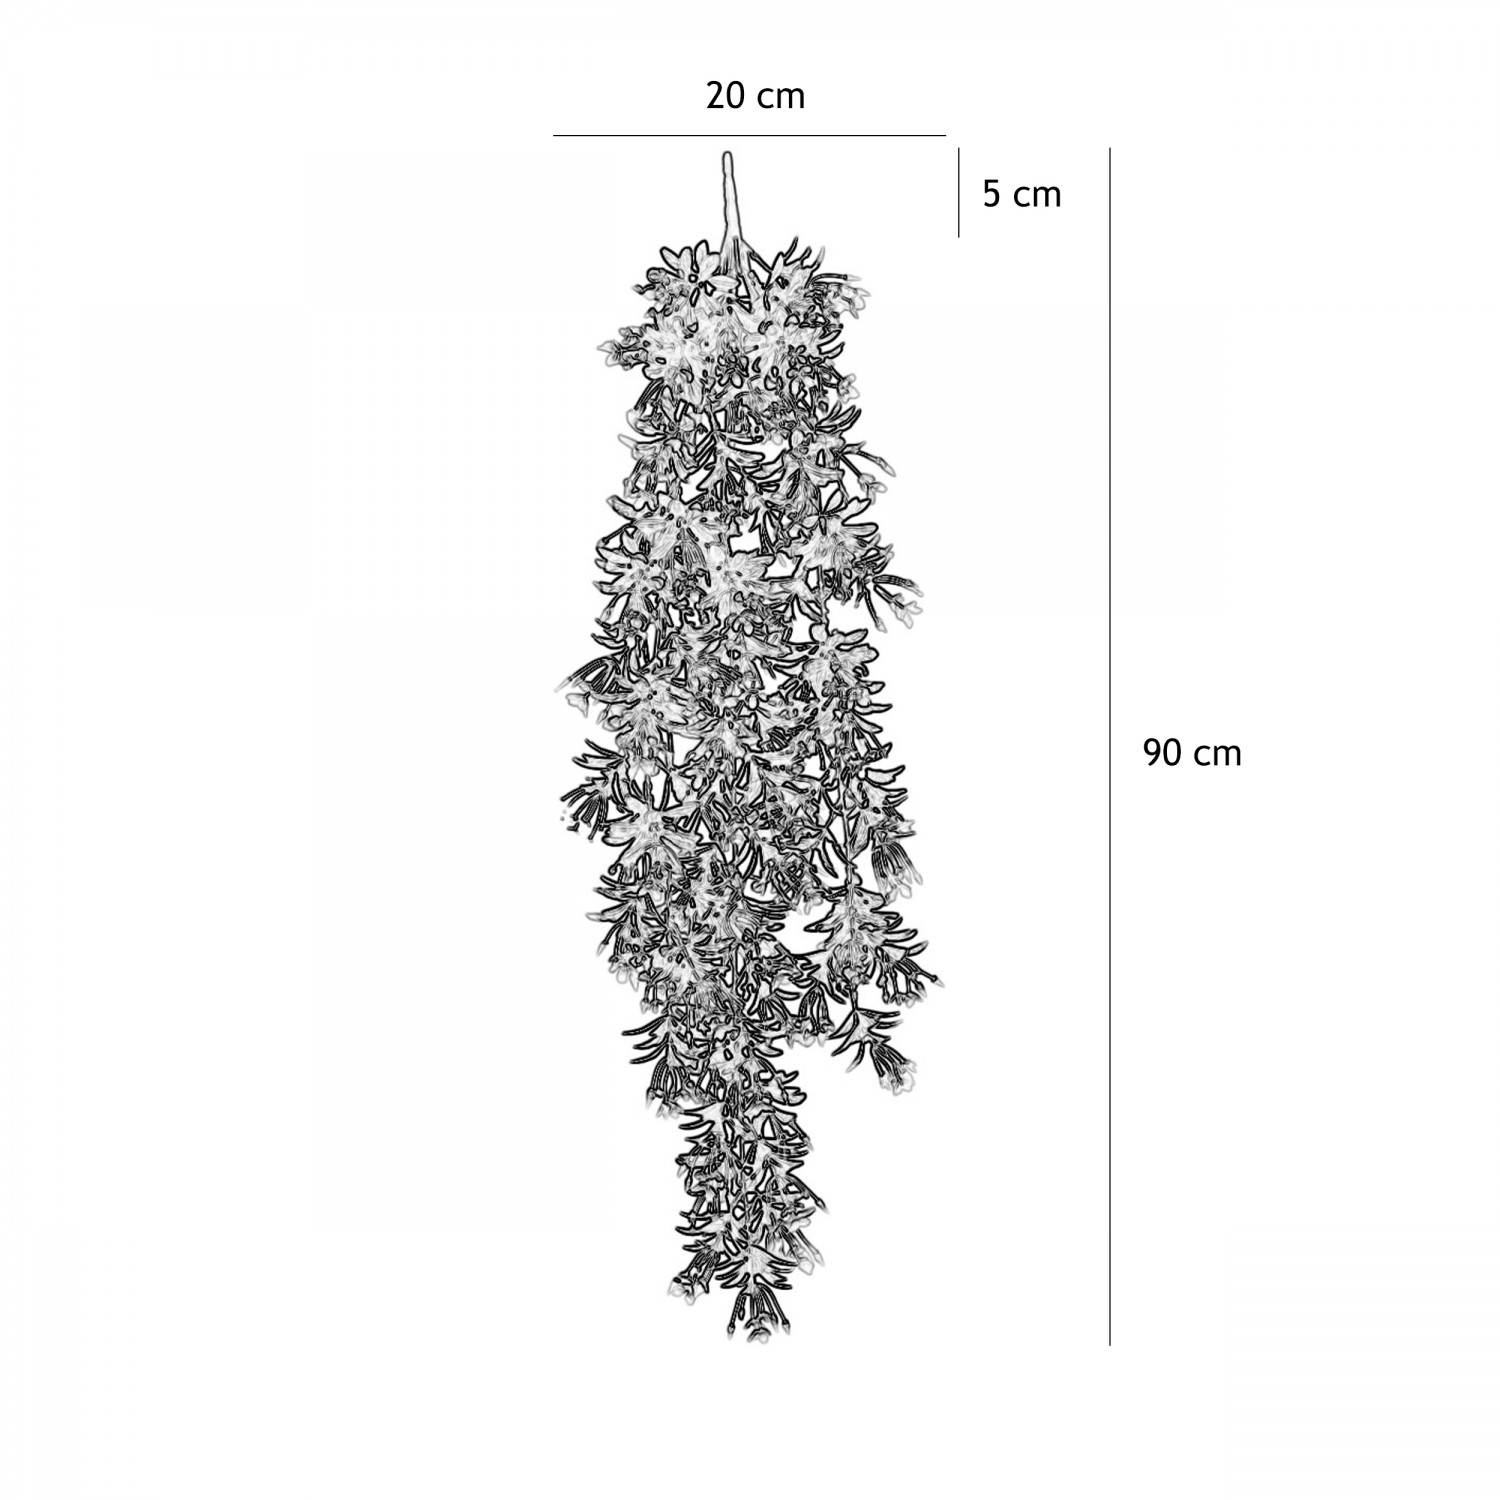 Chute plante artificielle blanc 90cm lot de 2 graphique avec les dimensions